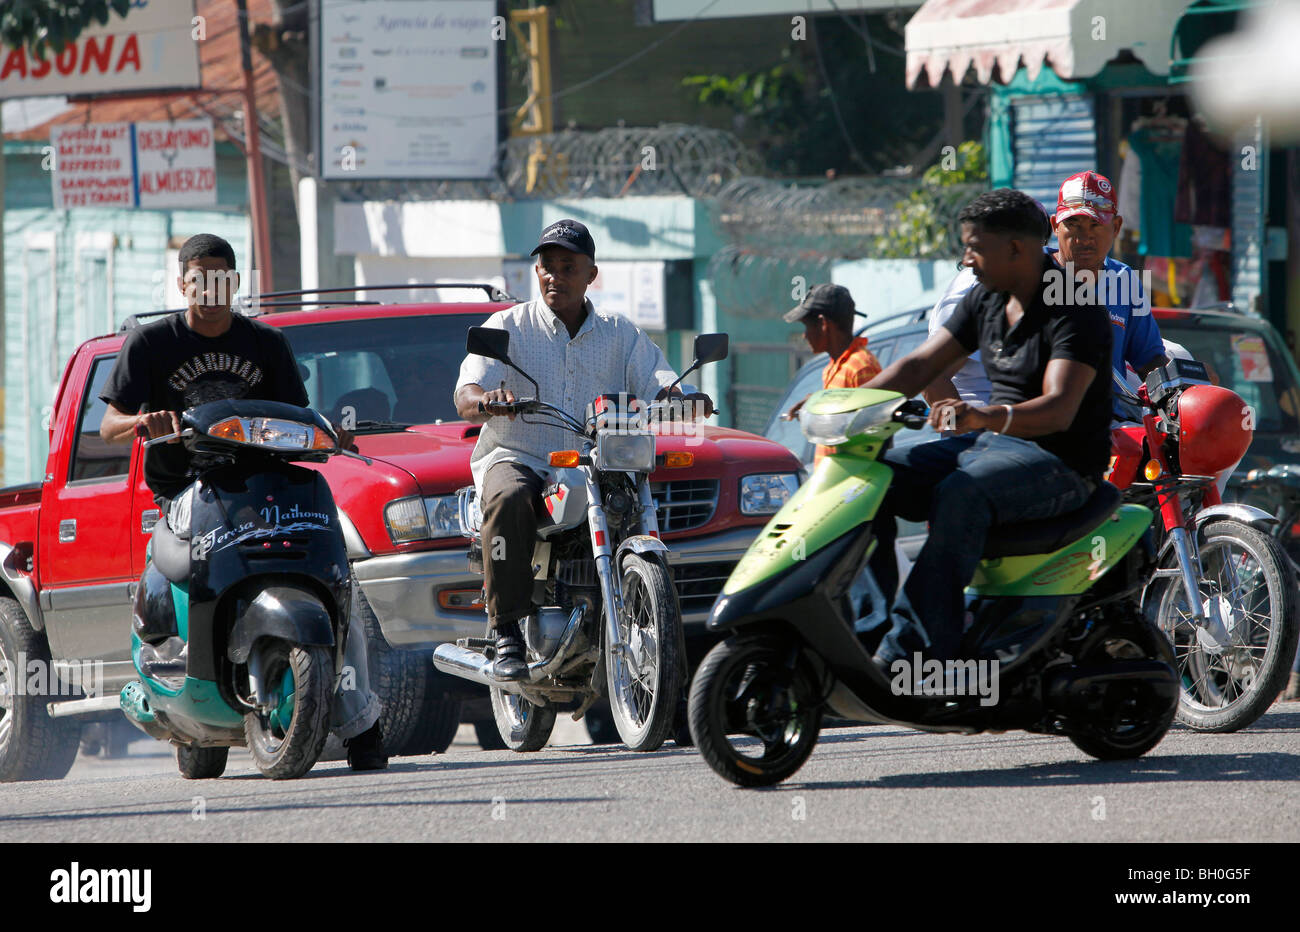 Belebte Straße, Motorrad-Taxis oder Bonita, Barahona, Dominikanische Republik Stockfoto